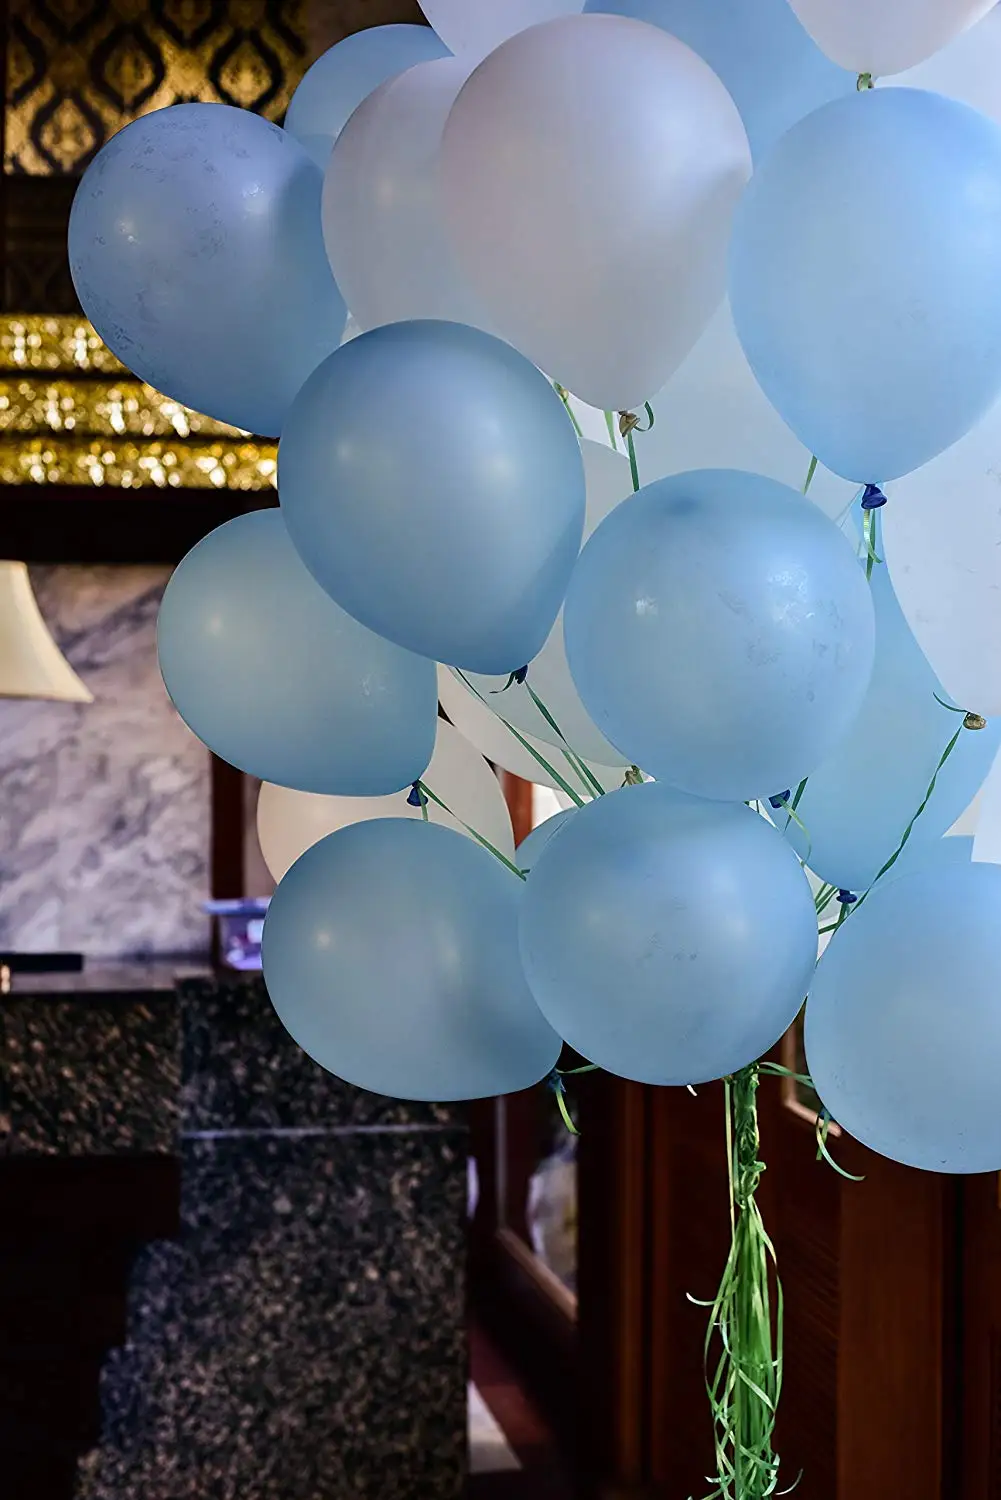 METABLE(100 упаковка) подаренный темно-синий и белый воздушные шары набор букет в металлическом латексе для дня рождения поставки, без рибббона